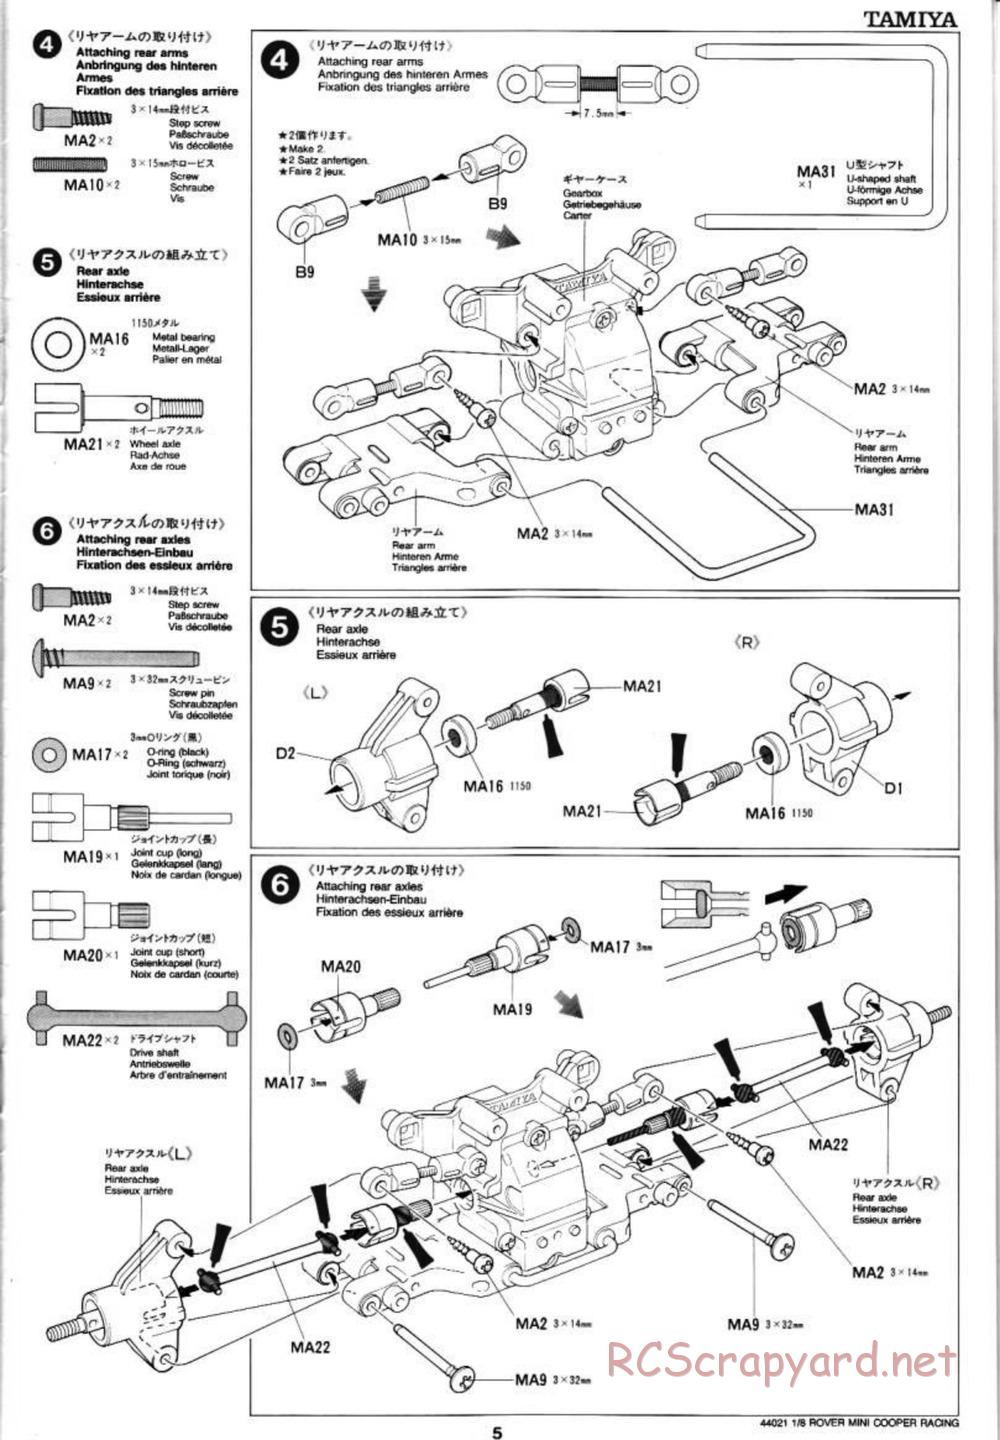 Tamiya - Rover Mini Cooper Racing - TG10 Mk.1 Chassis - Manual - Page 5